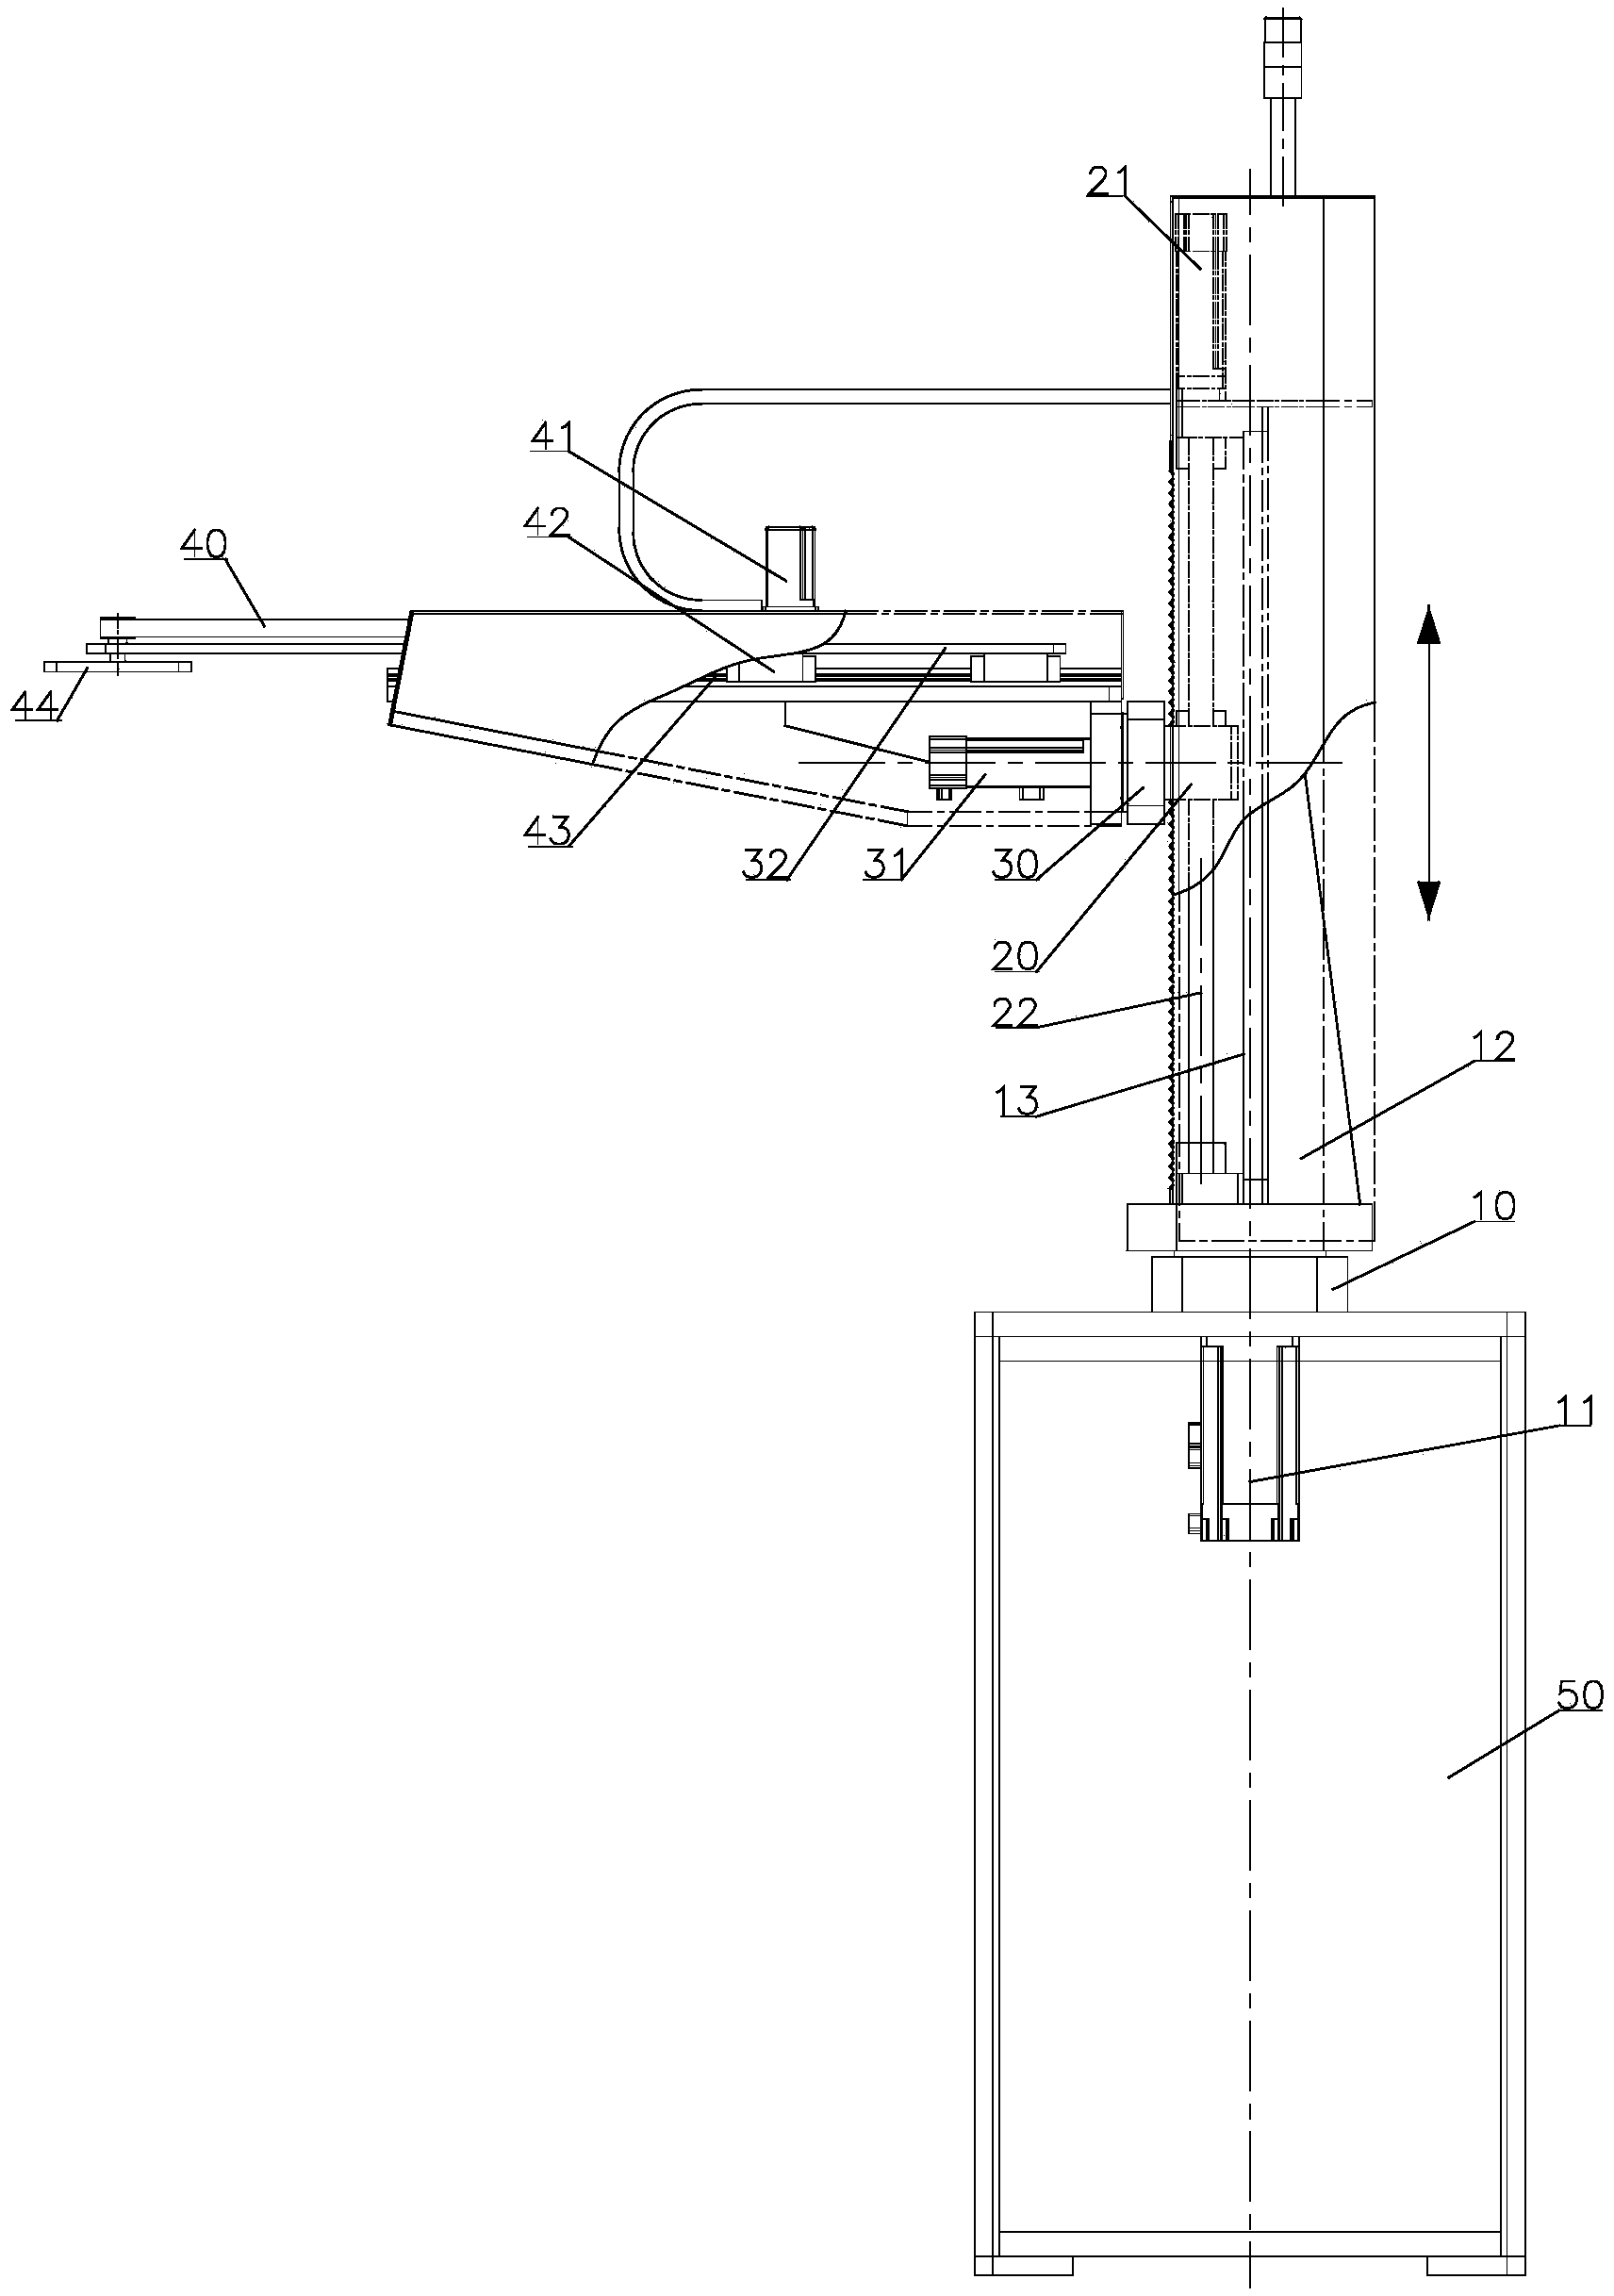 Four-axis mechanical arm